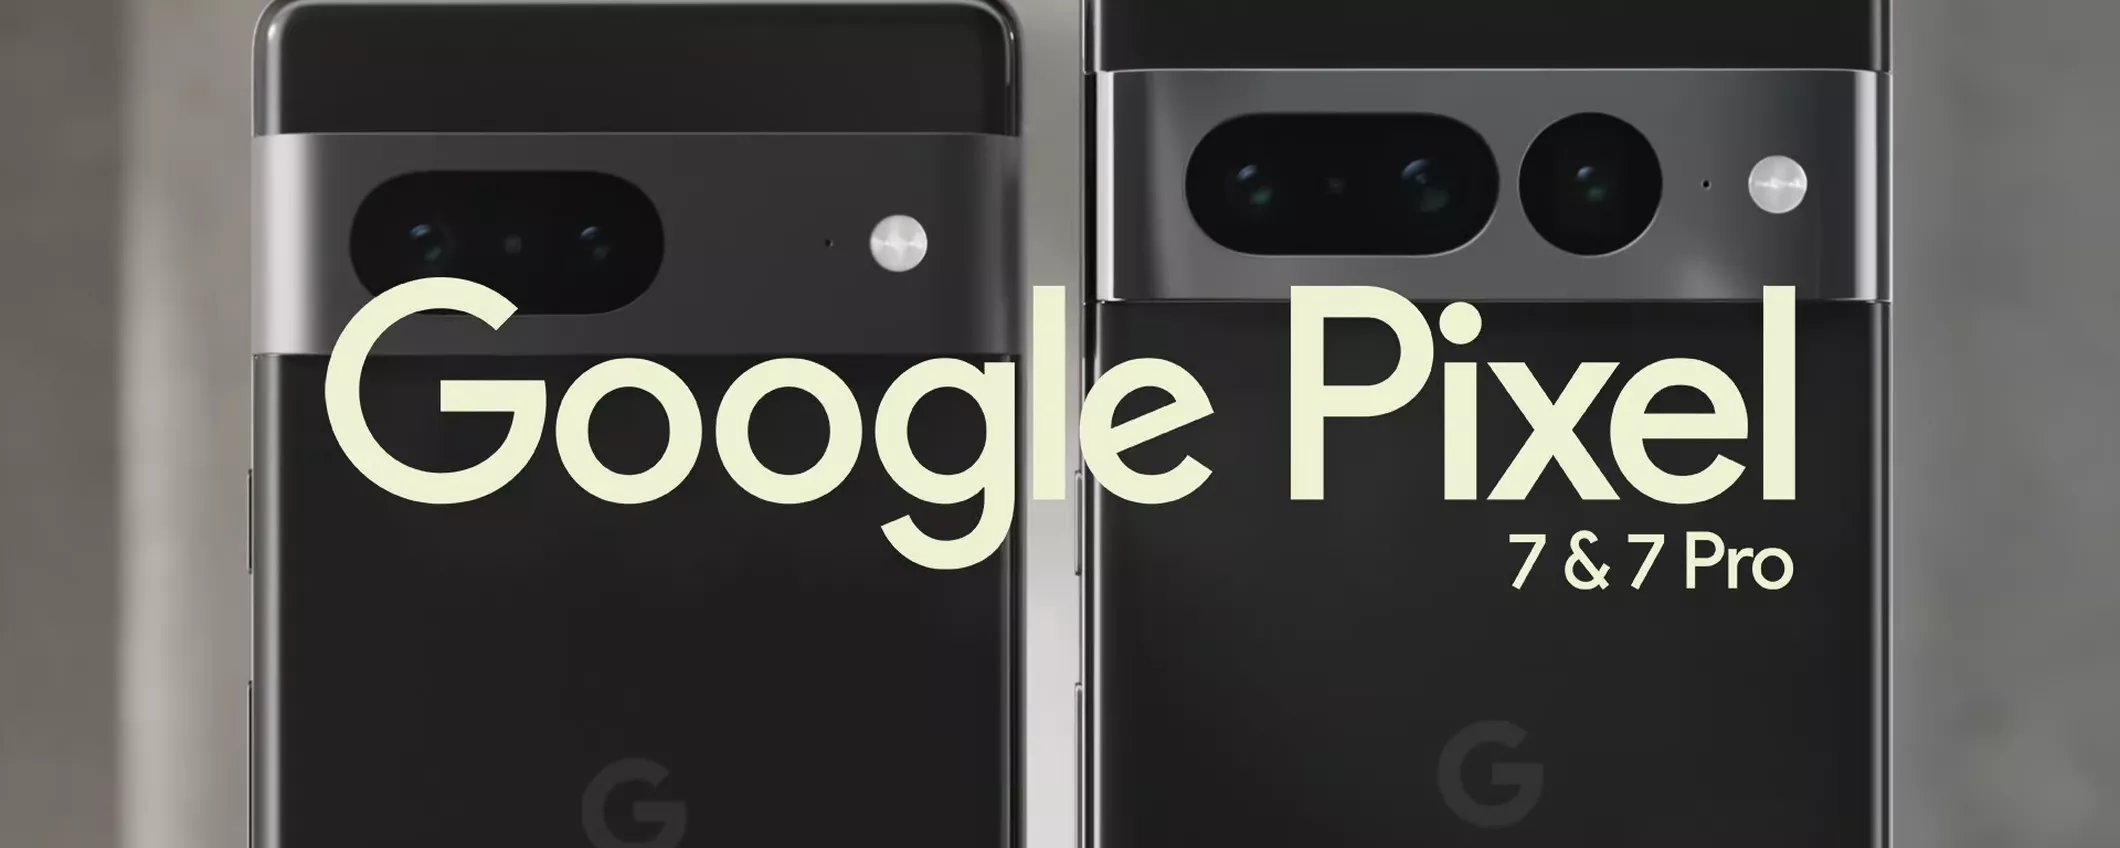 La frecciata di Google ad Apple durante l'evento Pixel 7 non è passata inosservata